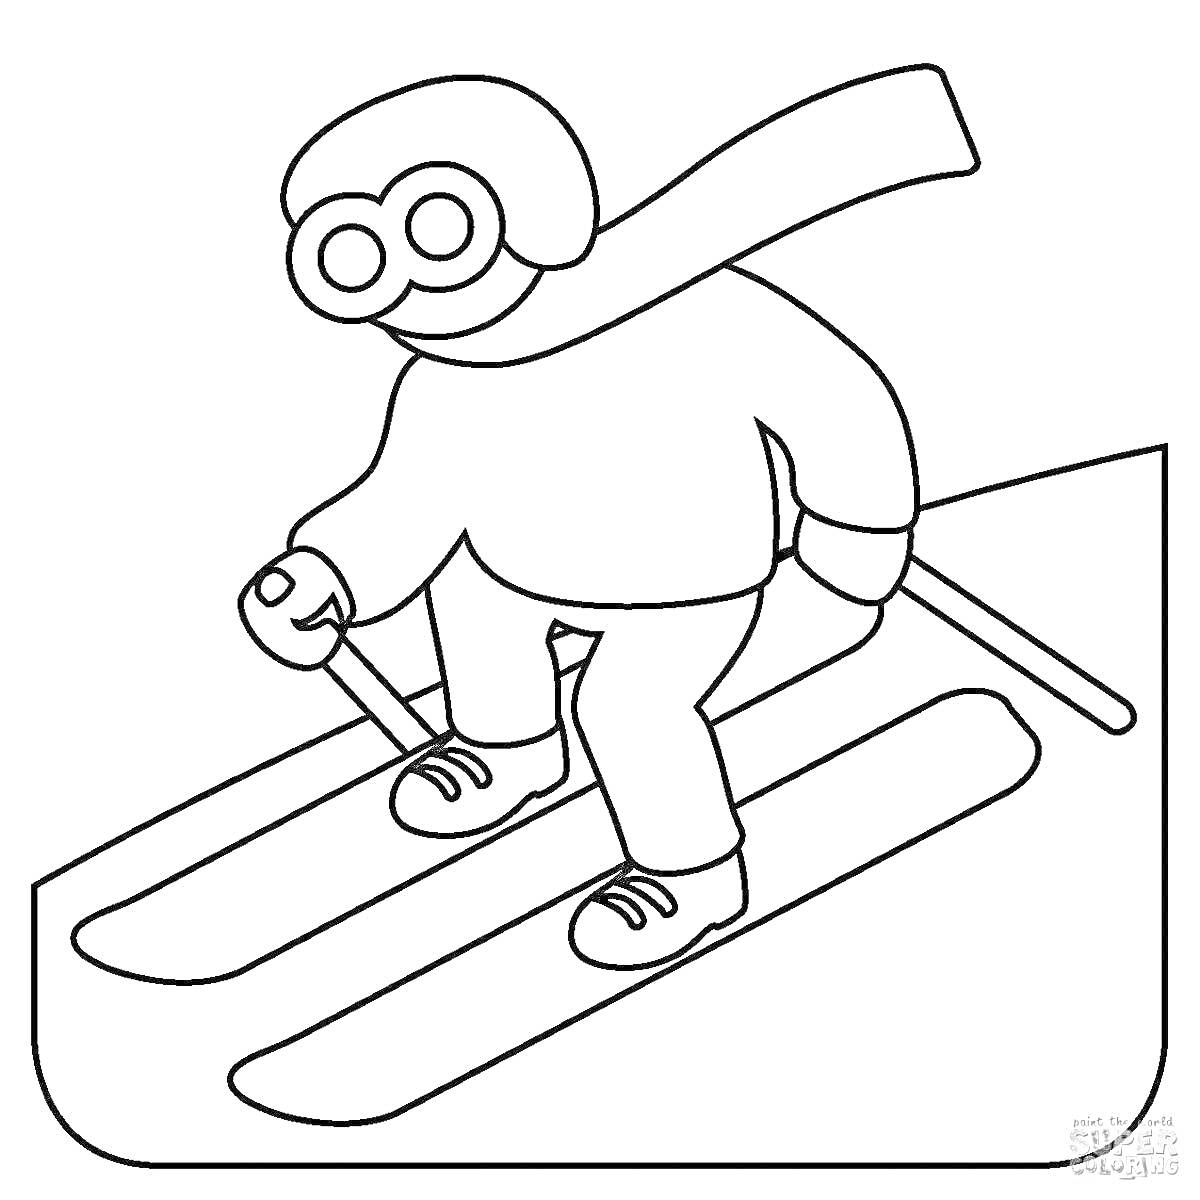 Раскраска Лыжник с палками в шлеме и шарфе